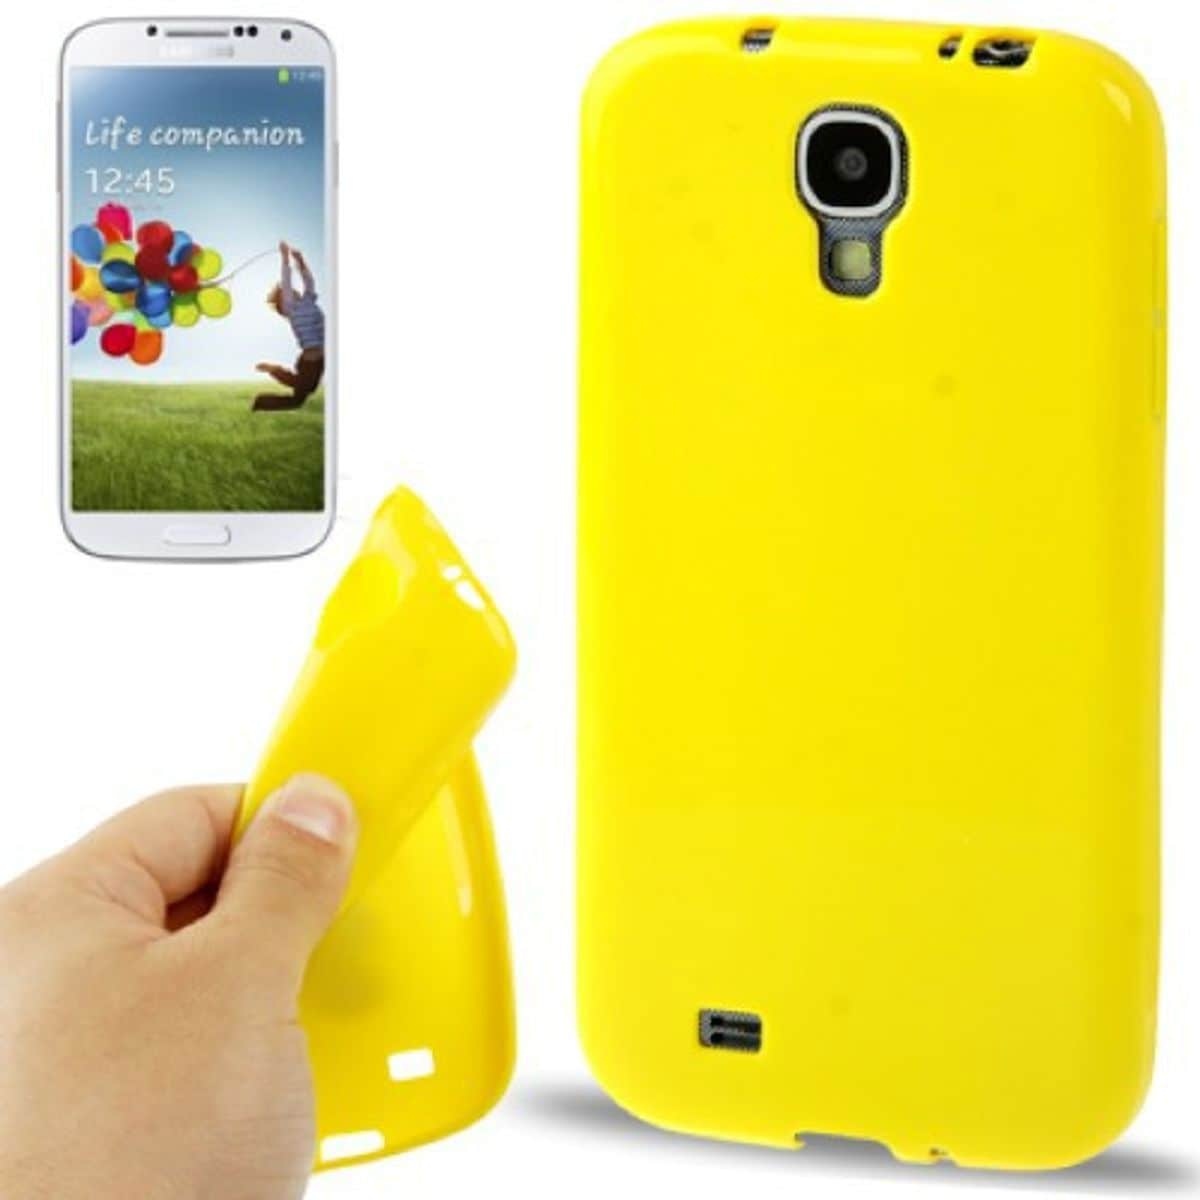 König Design Schutzhülle TPU Case für Handy Samsung Galaxy S4 GT I9500 / GT I9505 / LTE+ GT I9506 / Value Edition (Galaxy S4), Smartphone Hülle, Gelb